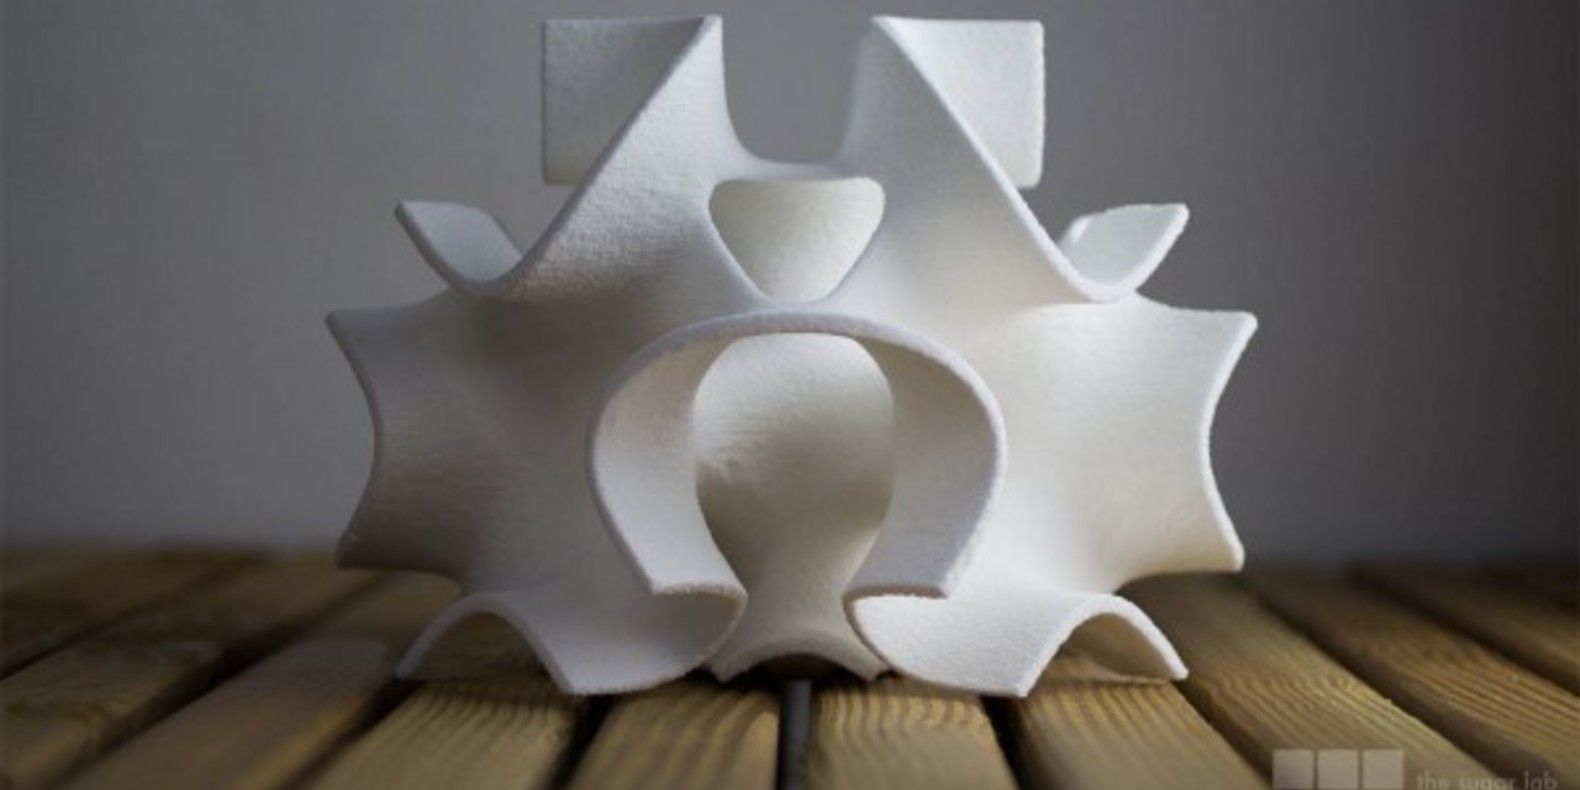 sculptures de sucre the sugar lab cults fichier 3D imprimante 3D patisserie cuisine 3D gateau